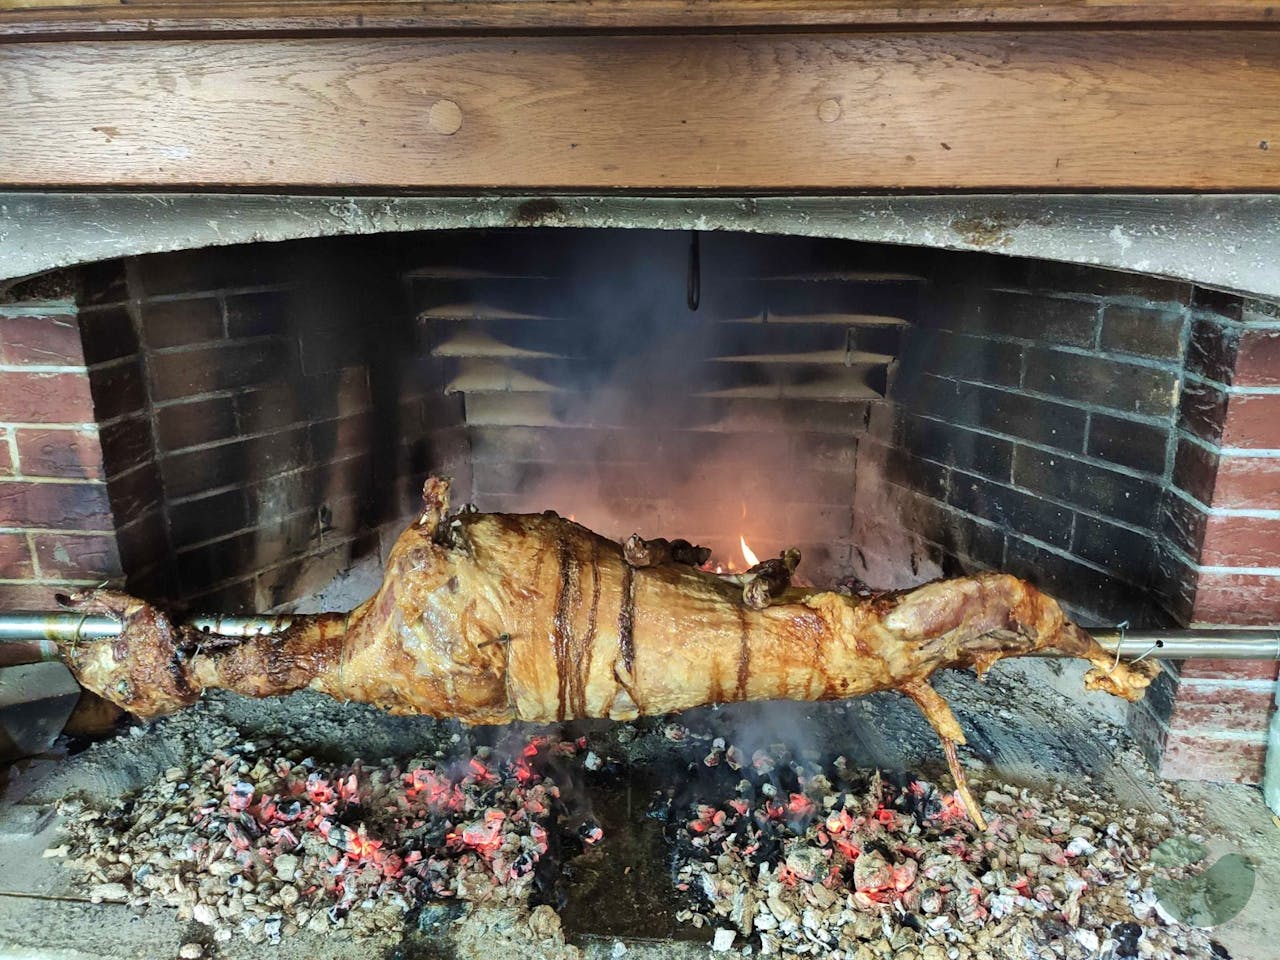 Eat lamb from the spit - on Roca farm near Zadar and Šibenik